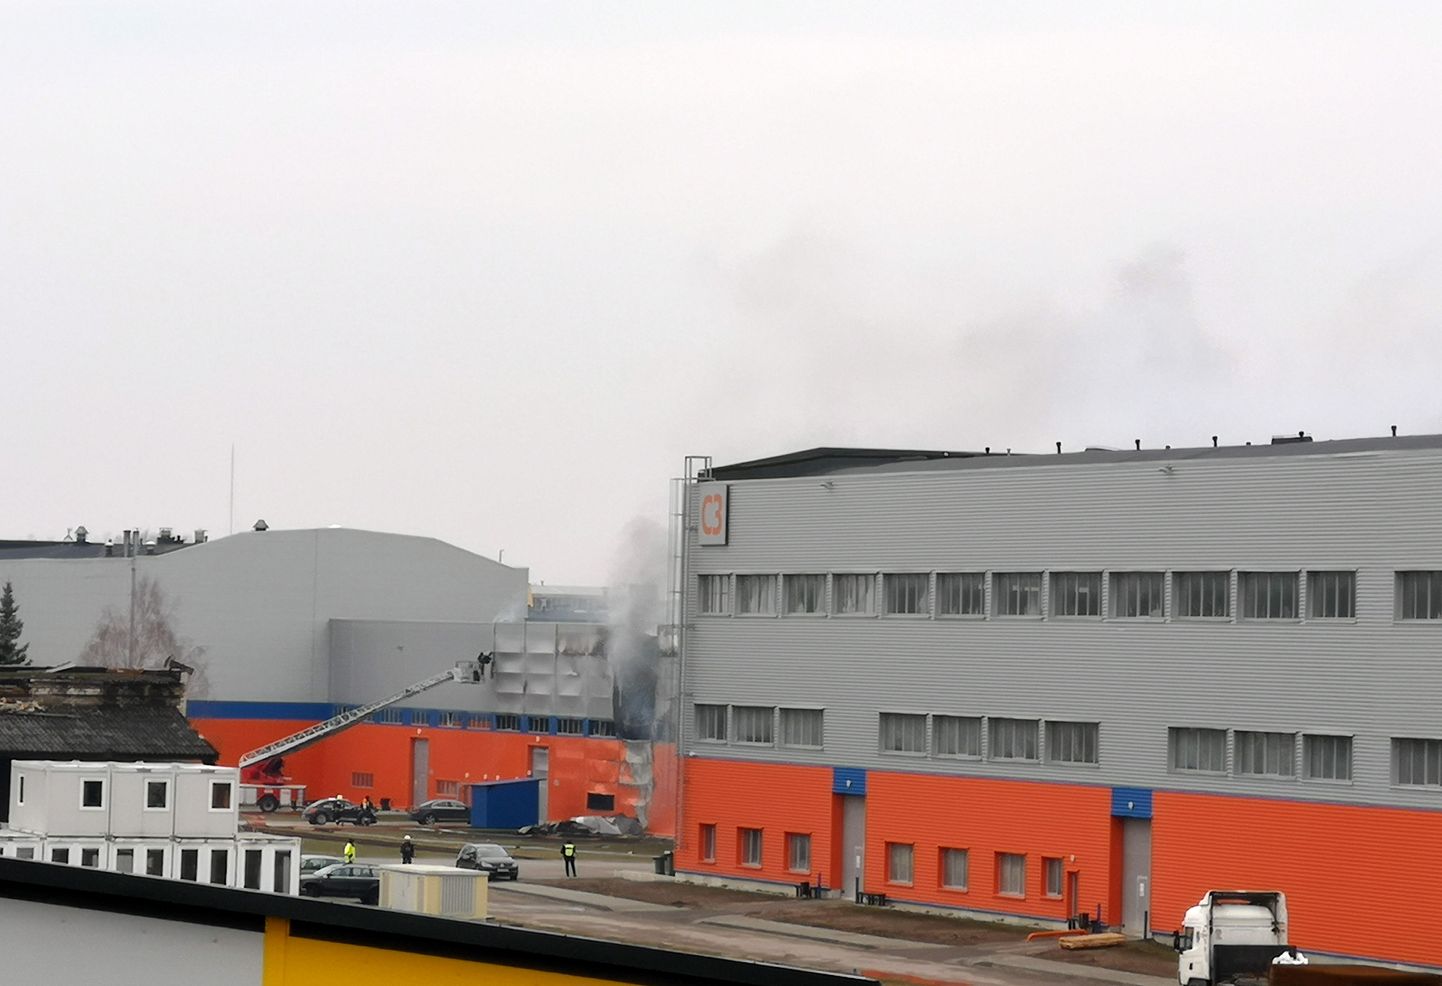 Industriālā parka "NP Jelgavas biznesa parks" rūpnieciskā teritorija Jelgavā, kur Aviācijas ielā aizdegusies vienstāva ražošanas ēka.